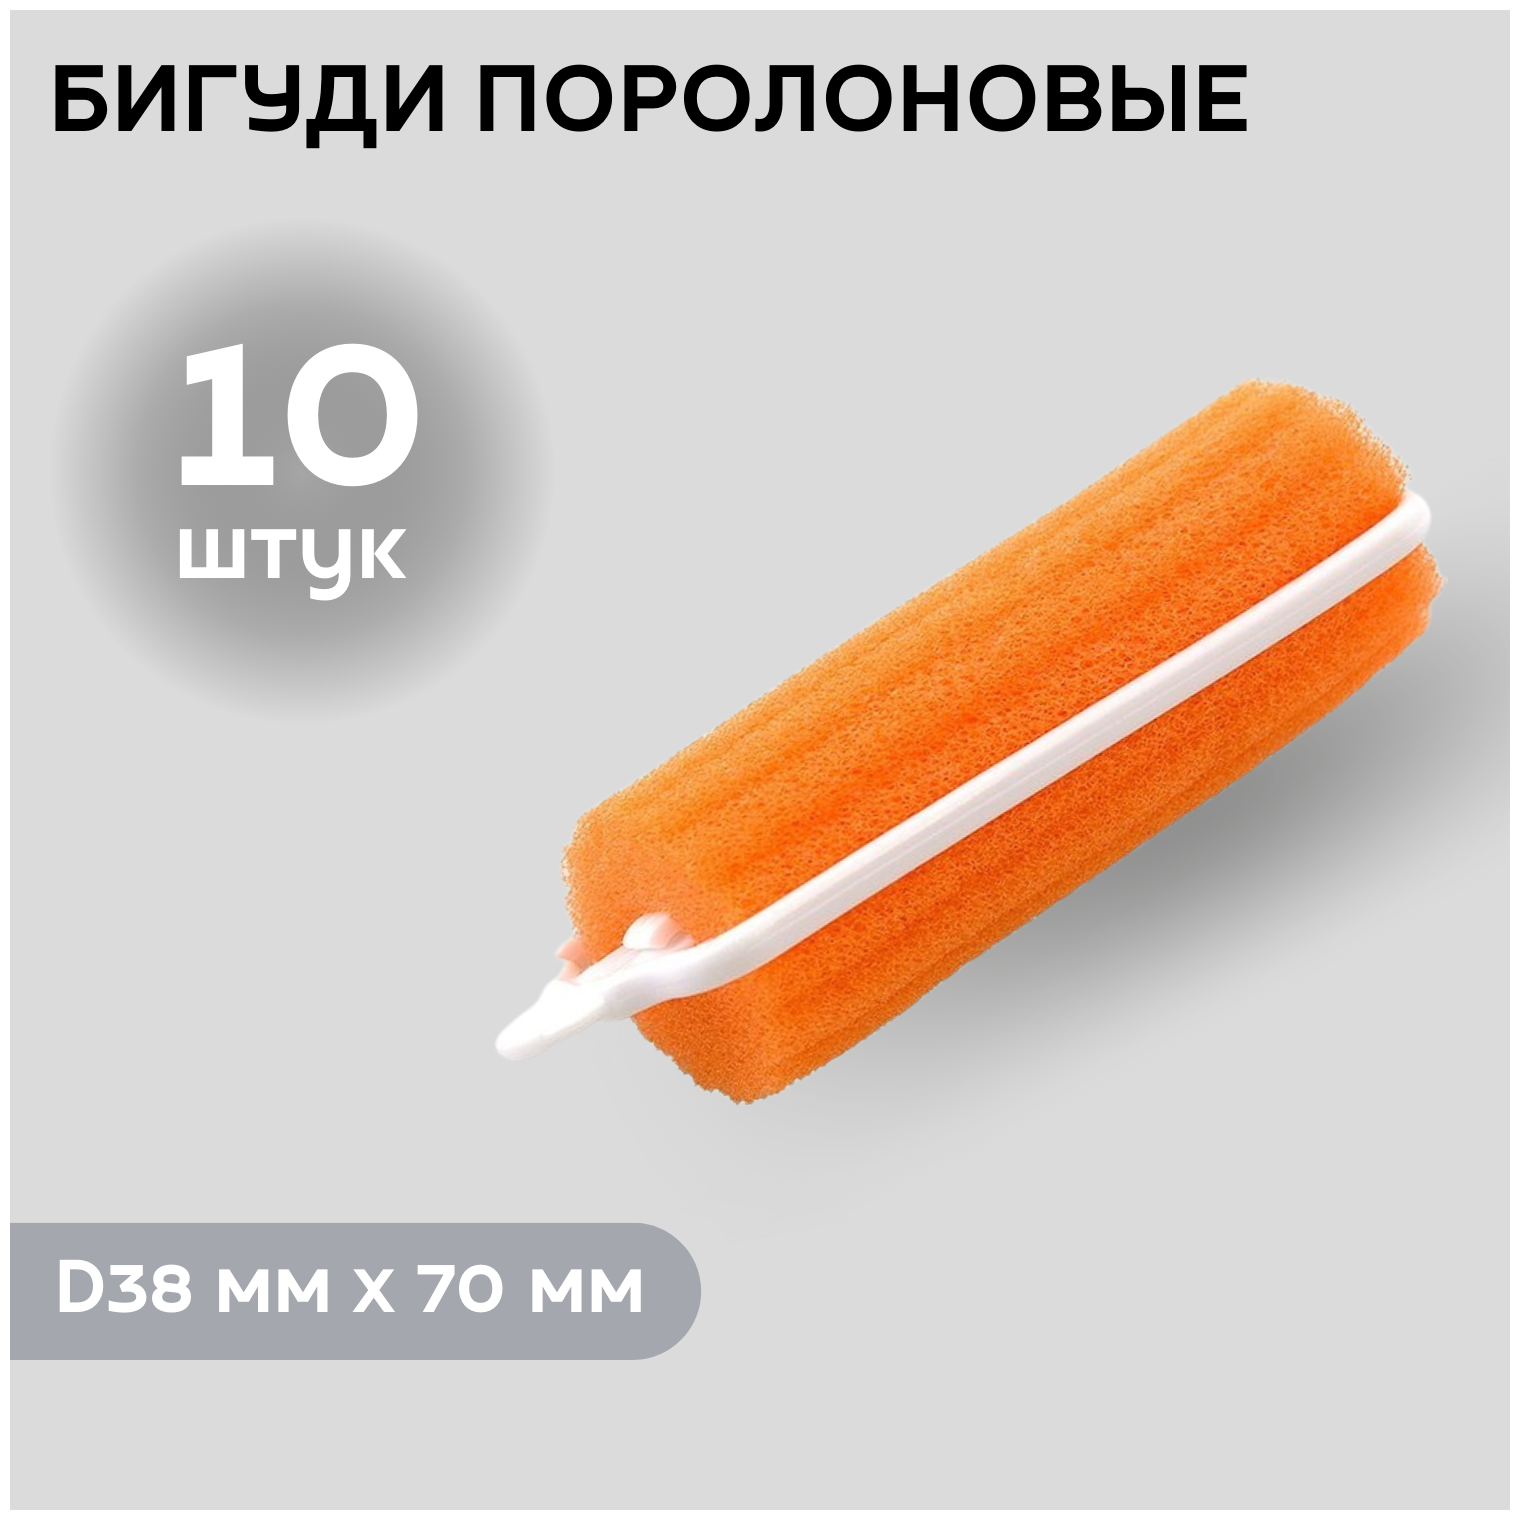 DEWAL BEAUTY Бигуди поролоновые DBP38, оранжевые, d 38 мм x 70 мм, 10 шт.